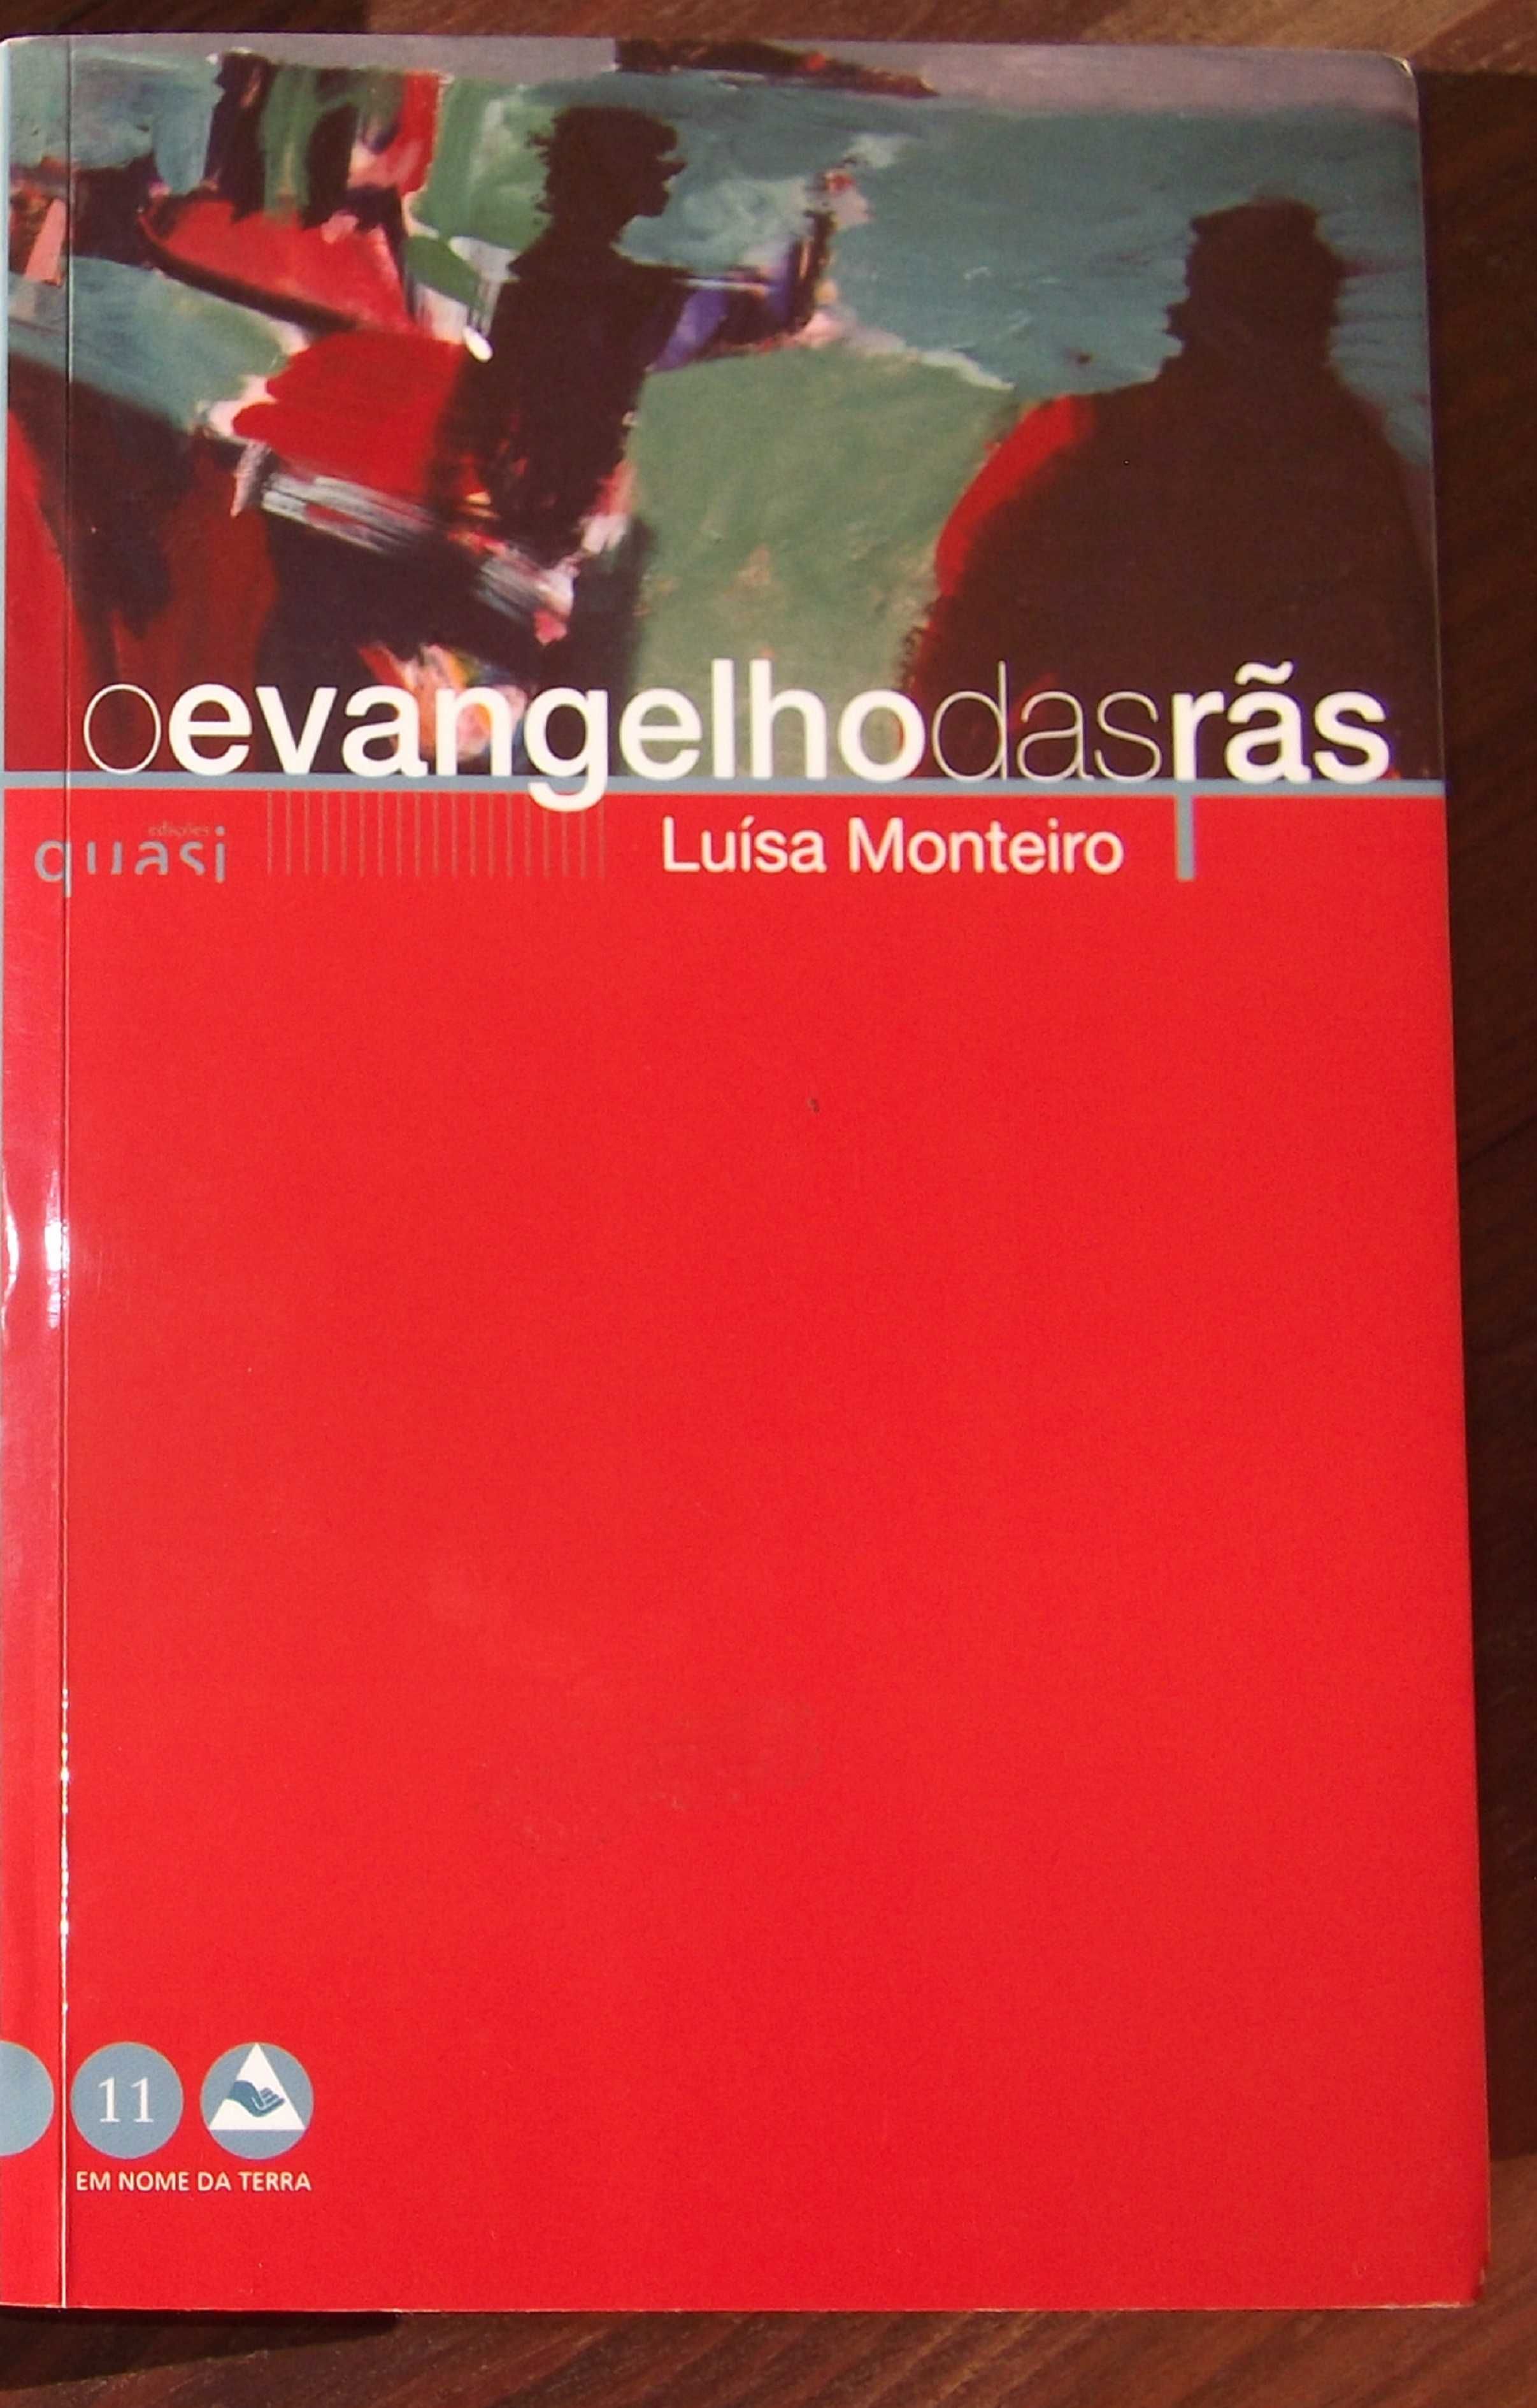 O evangelho das rãs - Luísa Monteiro